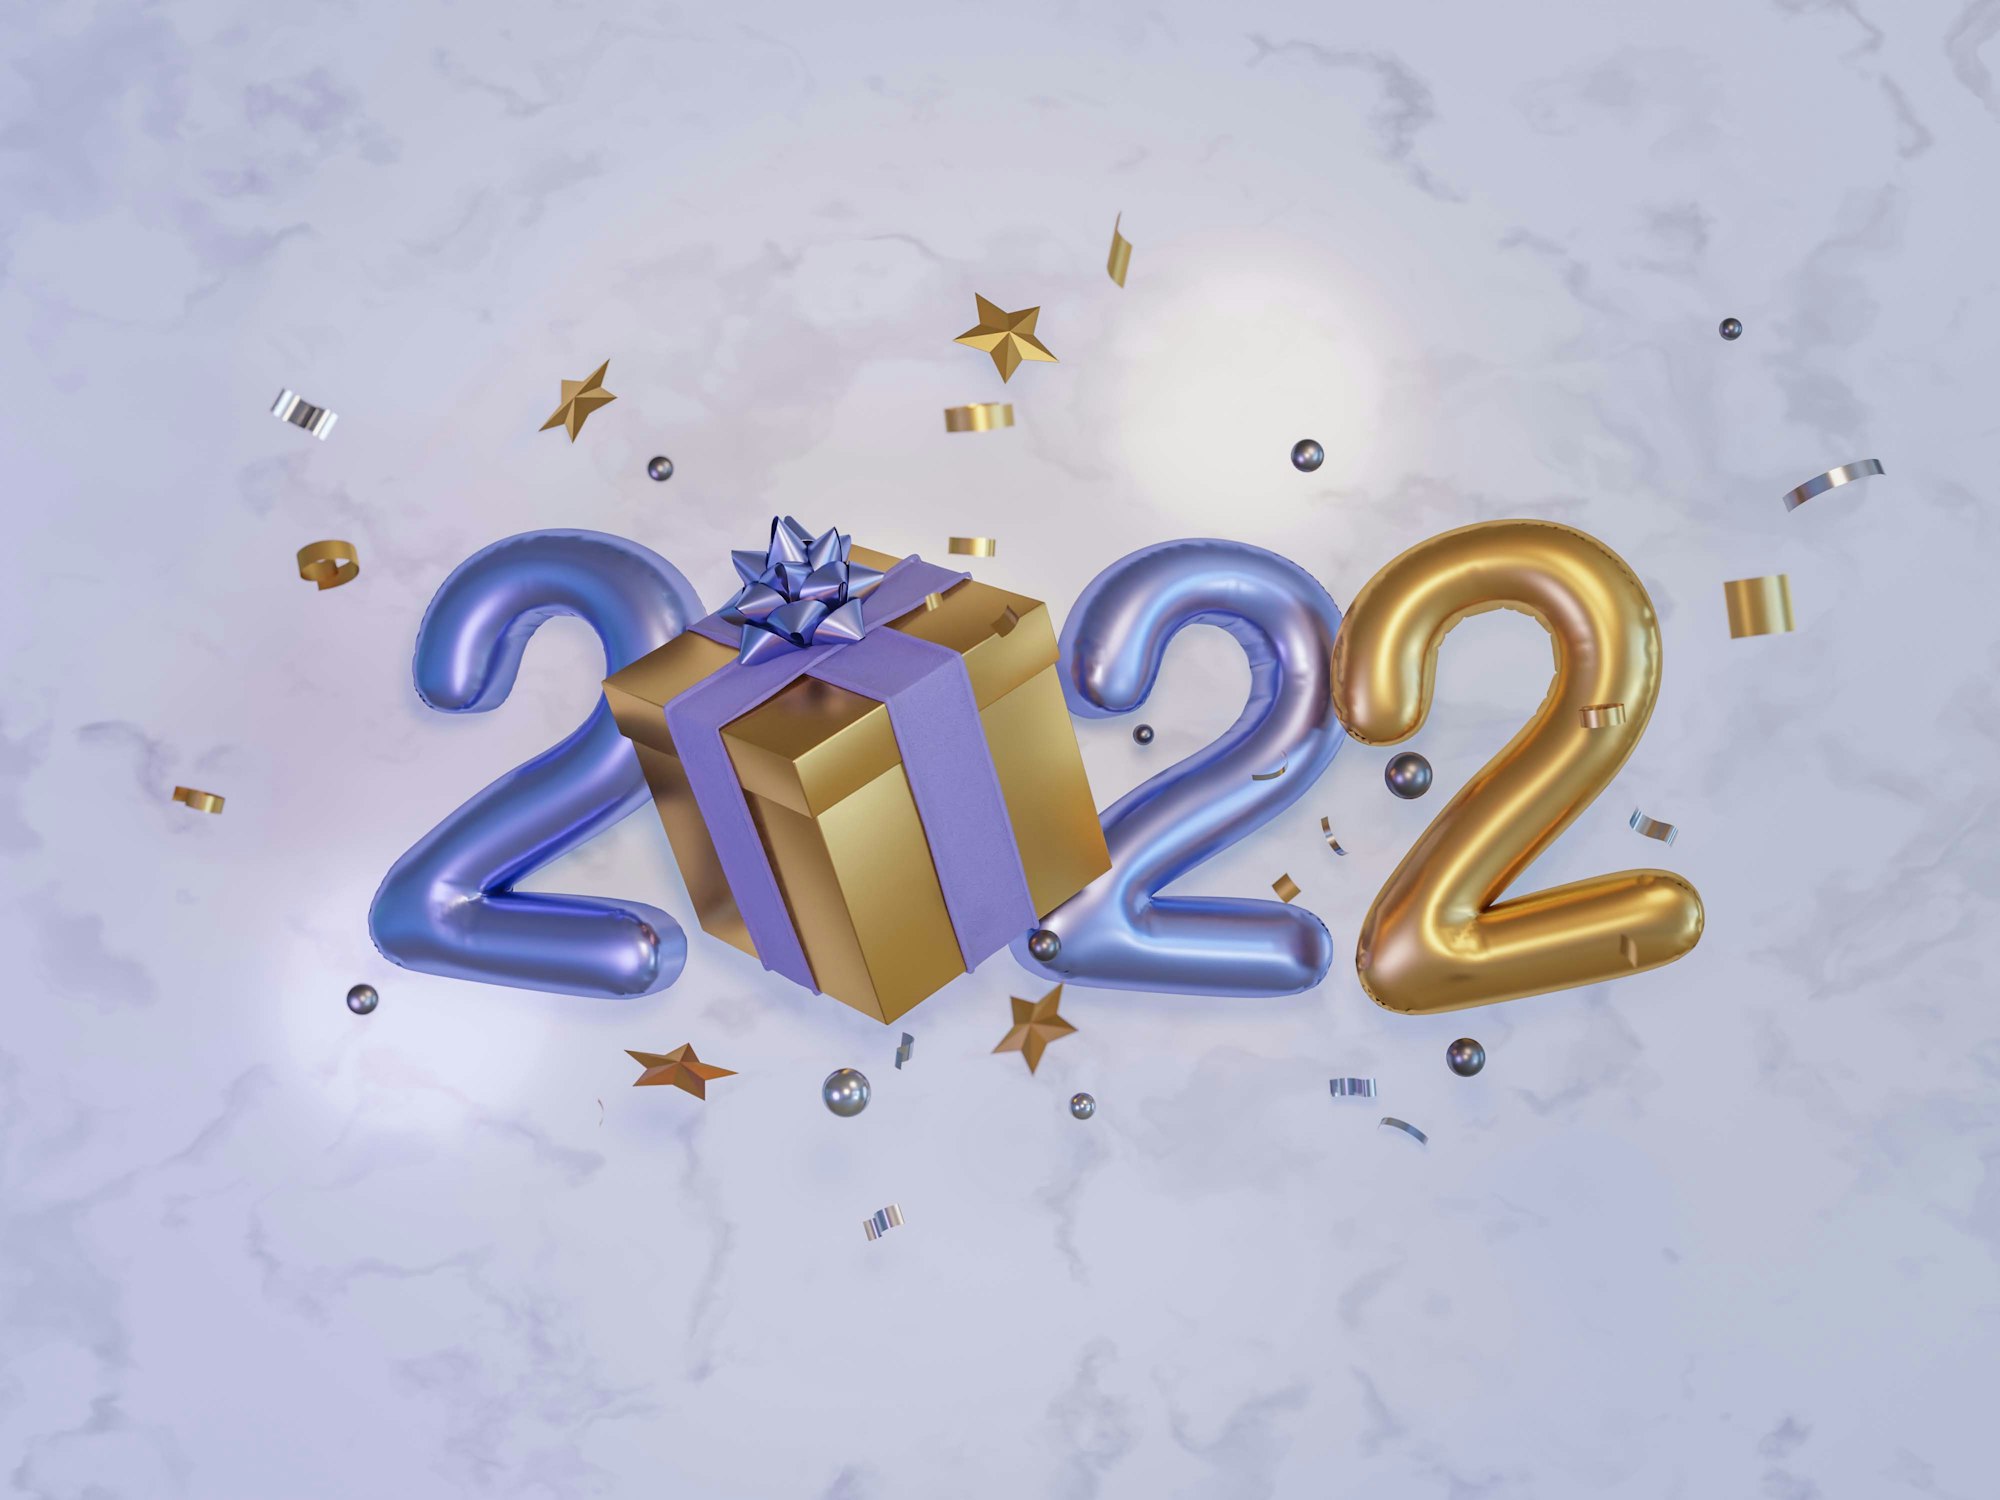 สุขสันต์วันปีใหม่ 2022